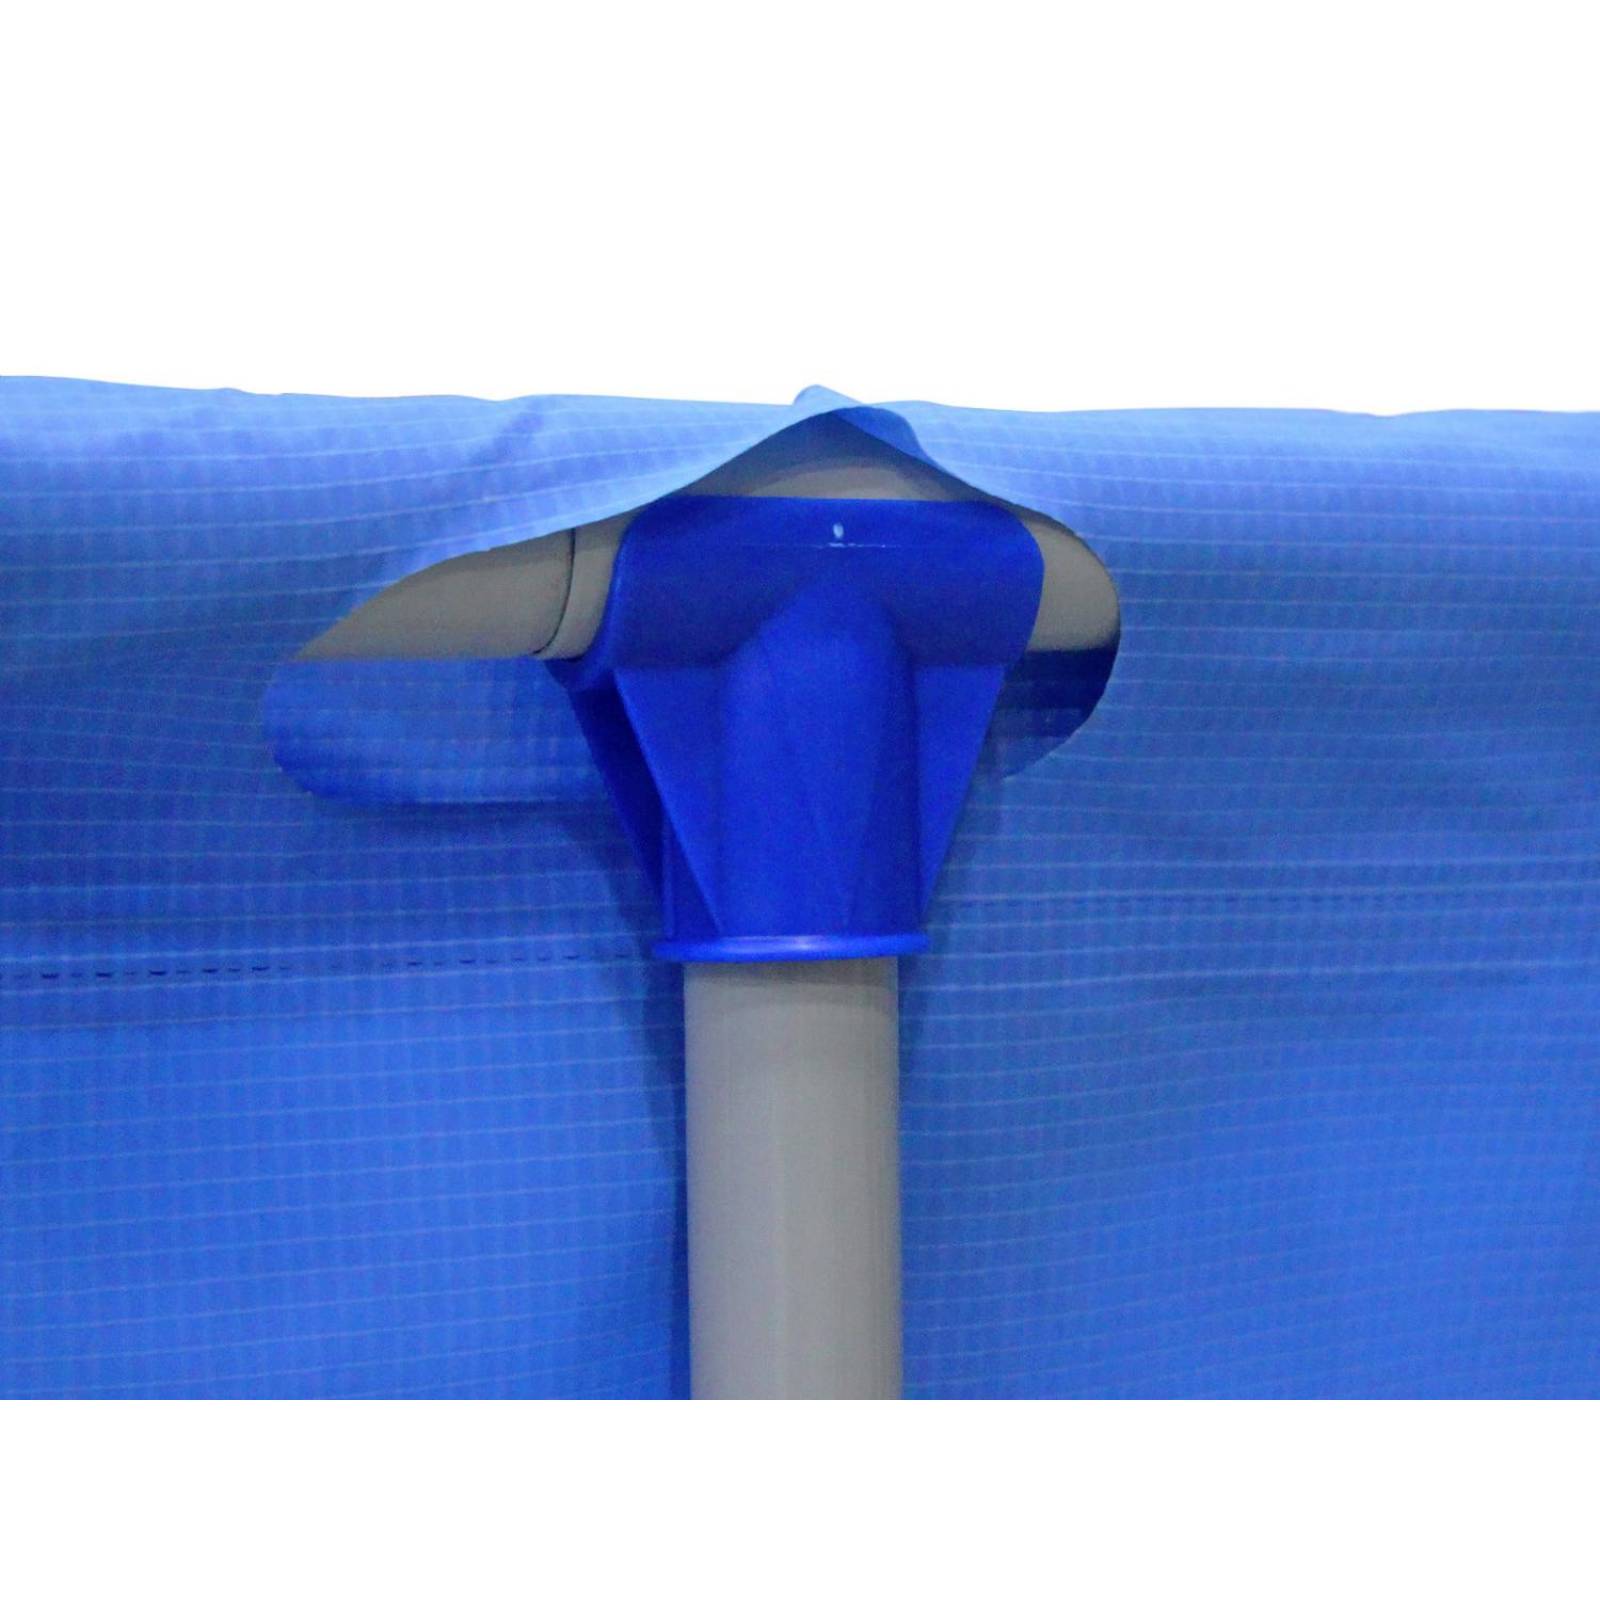 Alberca armable Rectangular Azul 265x182x66cm